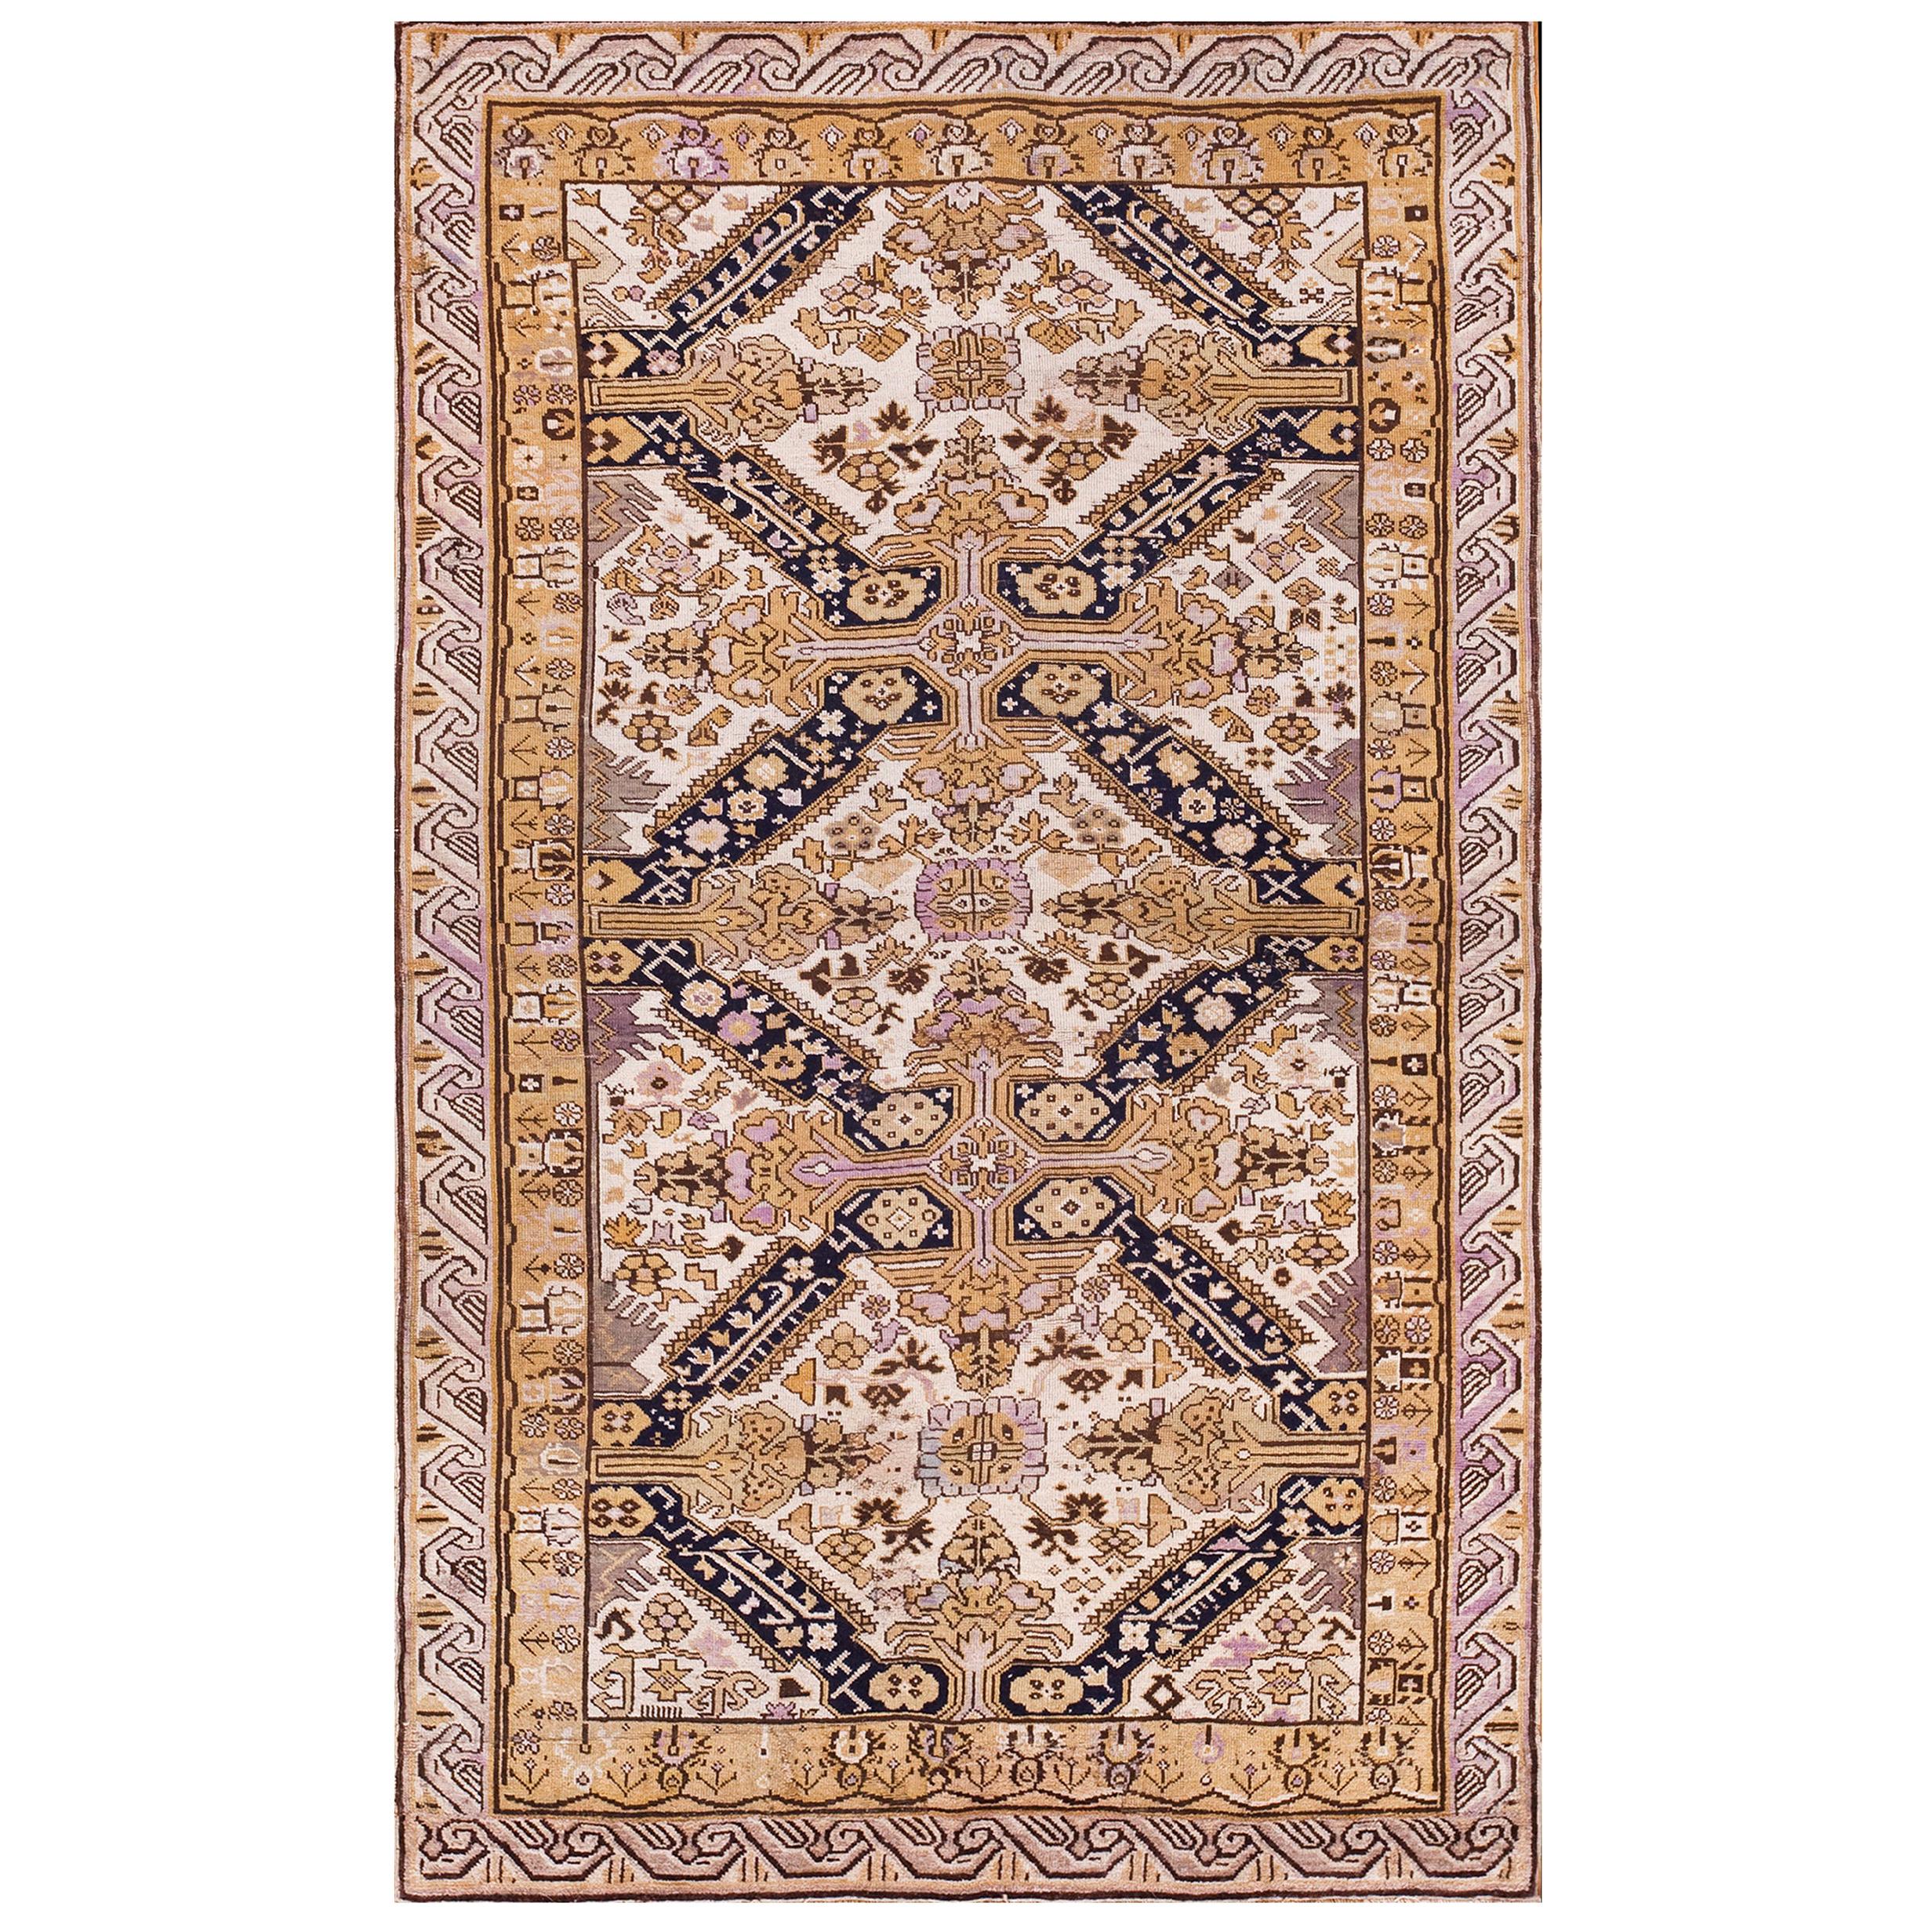 Kaukasischer Zeychor-Teppich des frühen 20. Jahrhunderts ( 3'9" x 6'6" - 114 x 198")